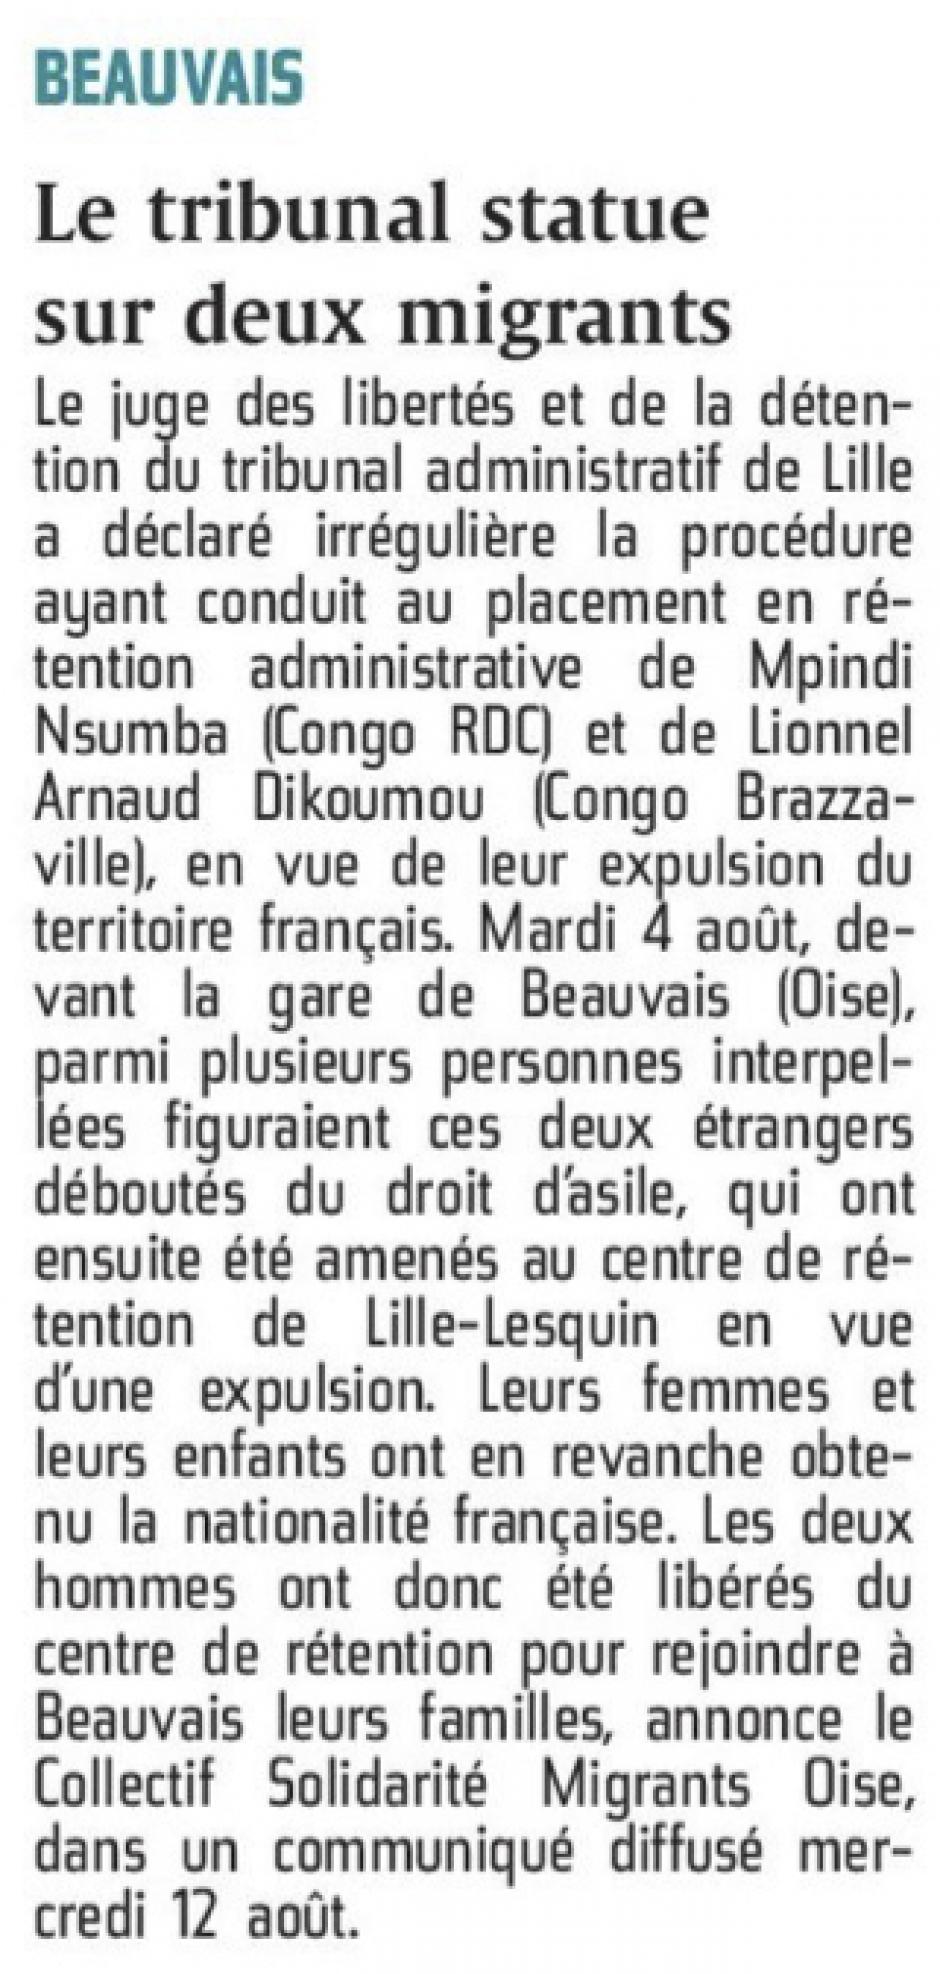 20150813-CP-Beauvais-Le tribunal statue sur deux migrants